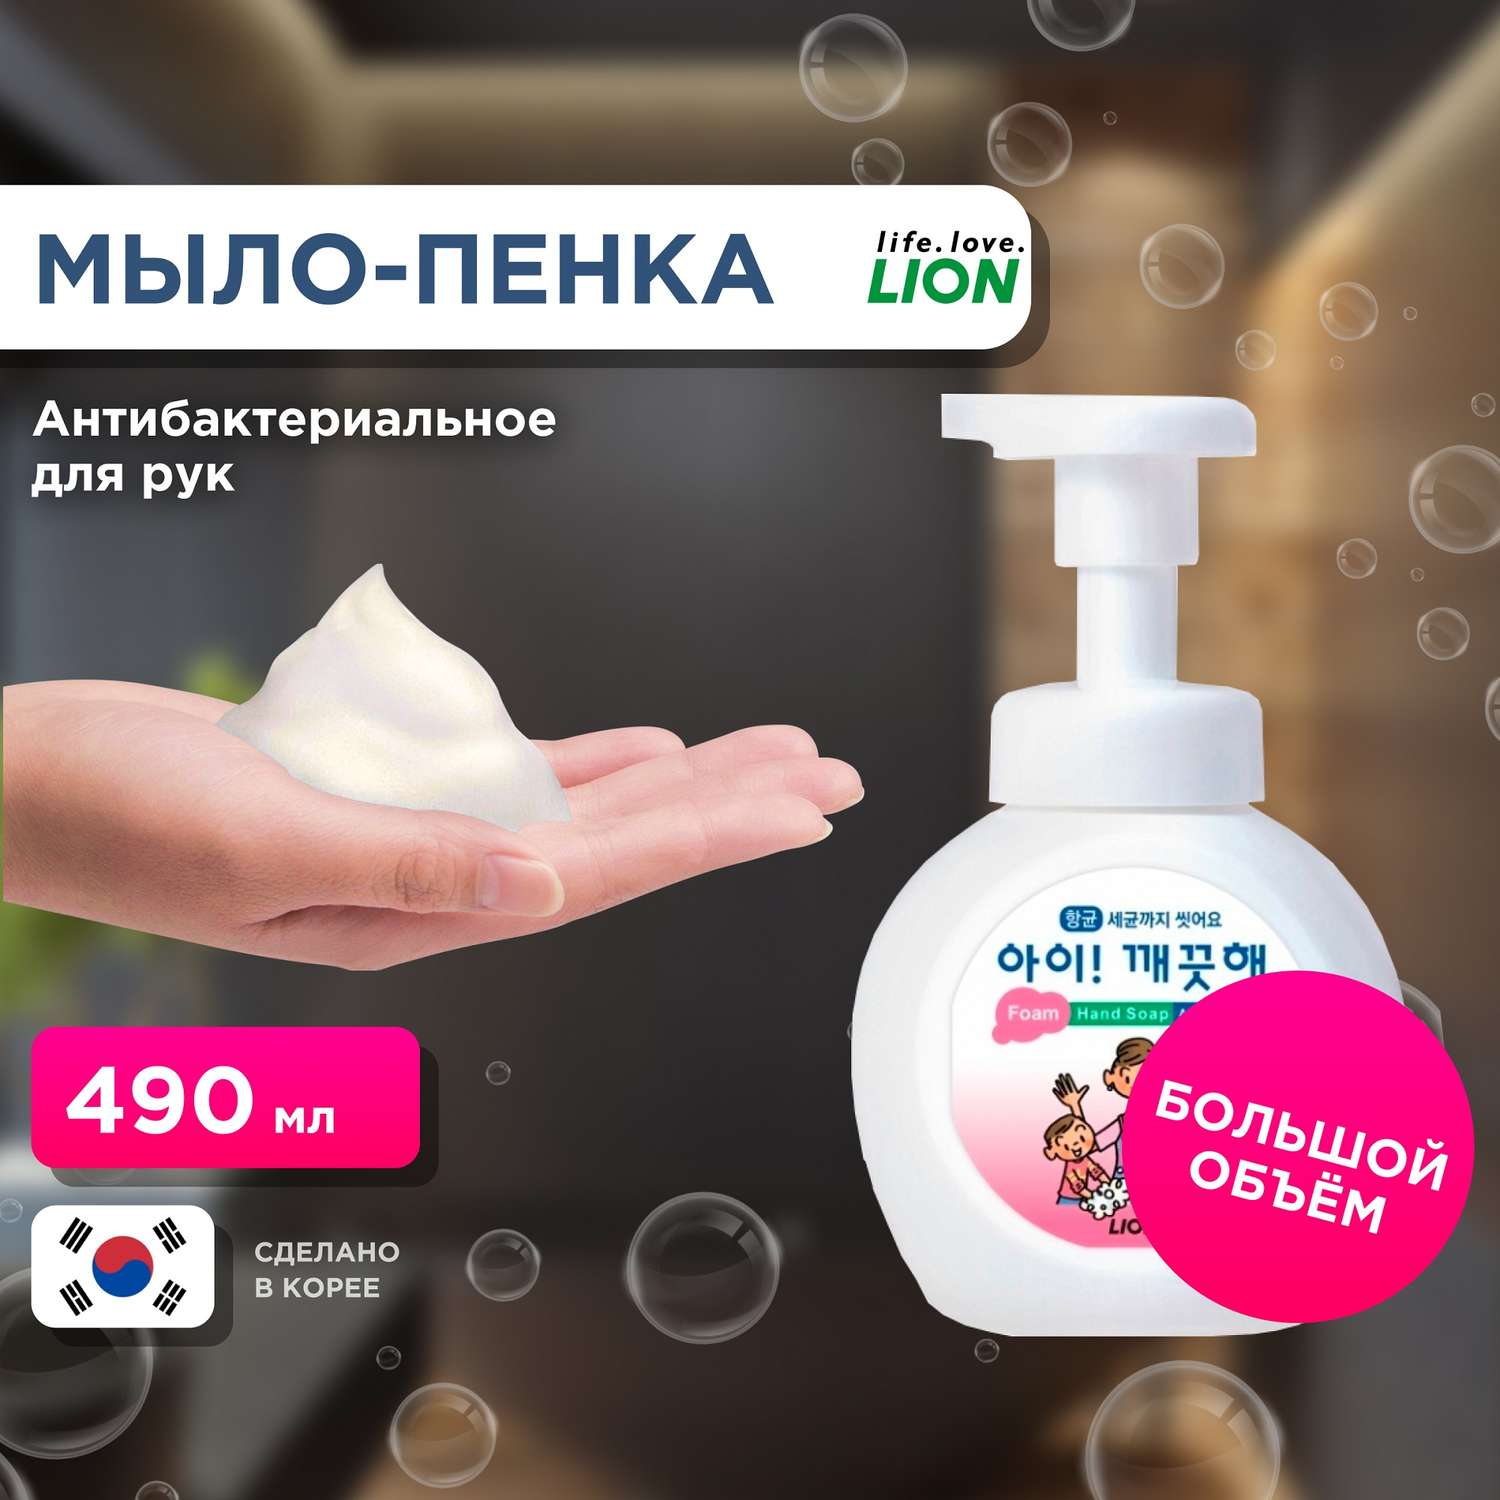 Пенное мыло для рук Lion с антибактериальным эффектом ai kekute с ароматом лимона флакон 490 мл - фото 1